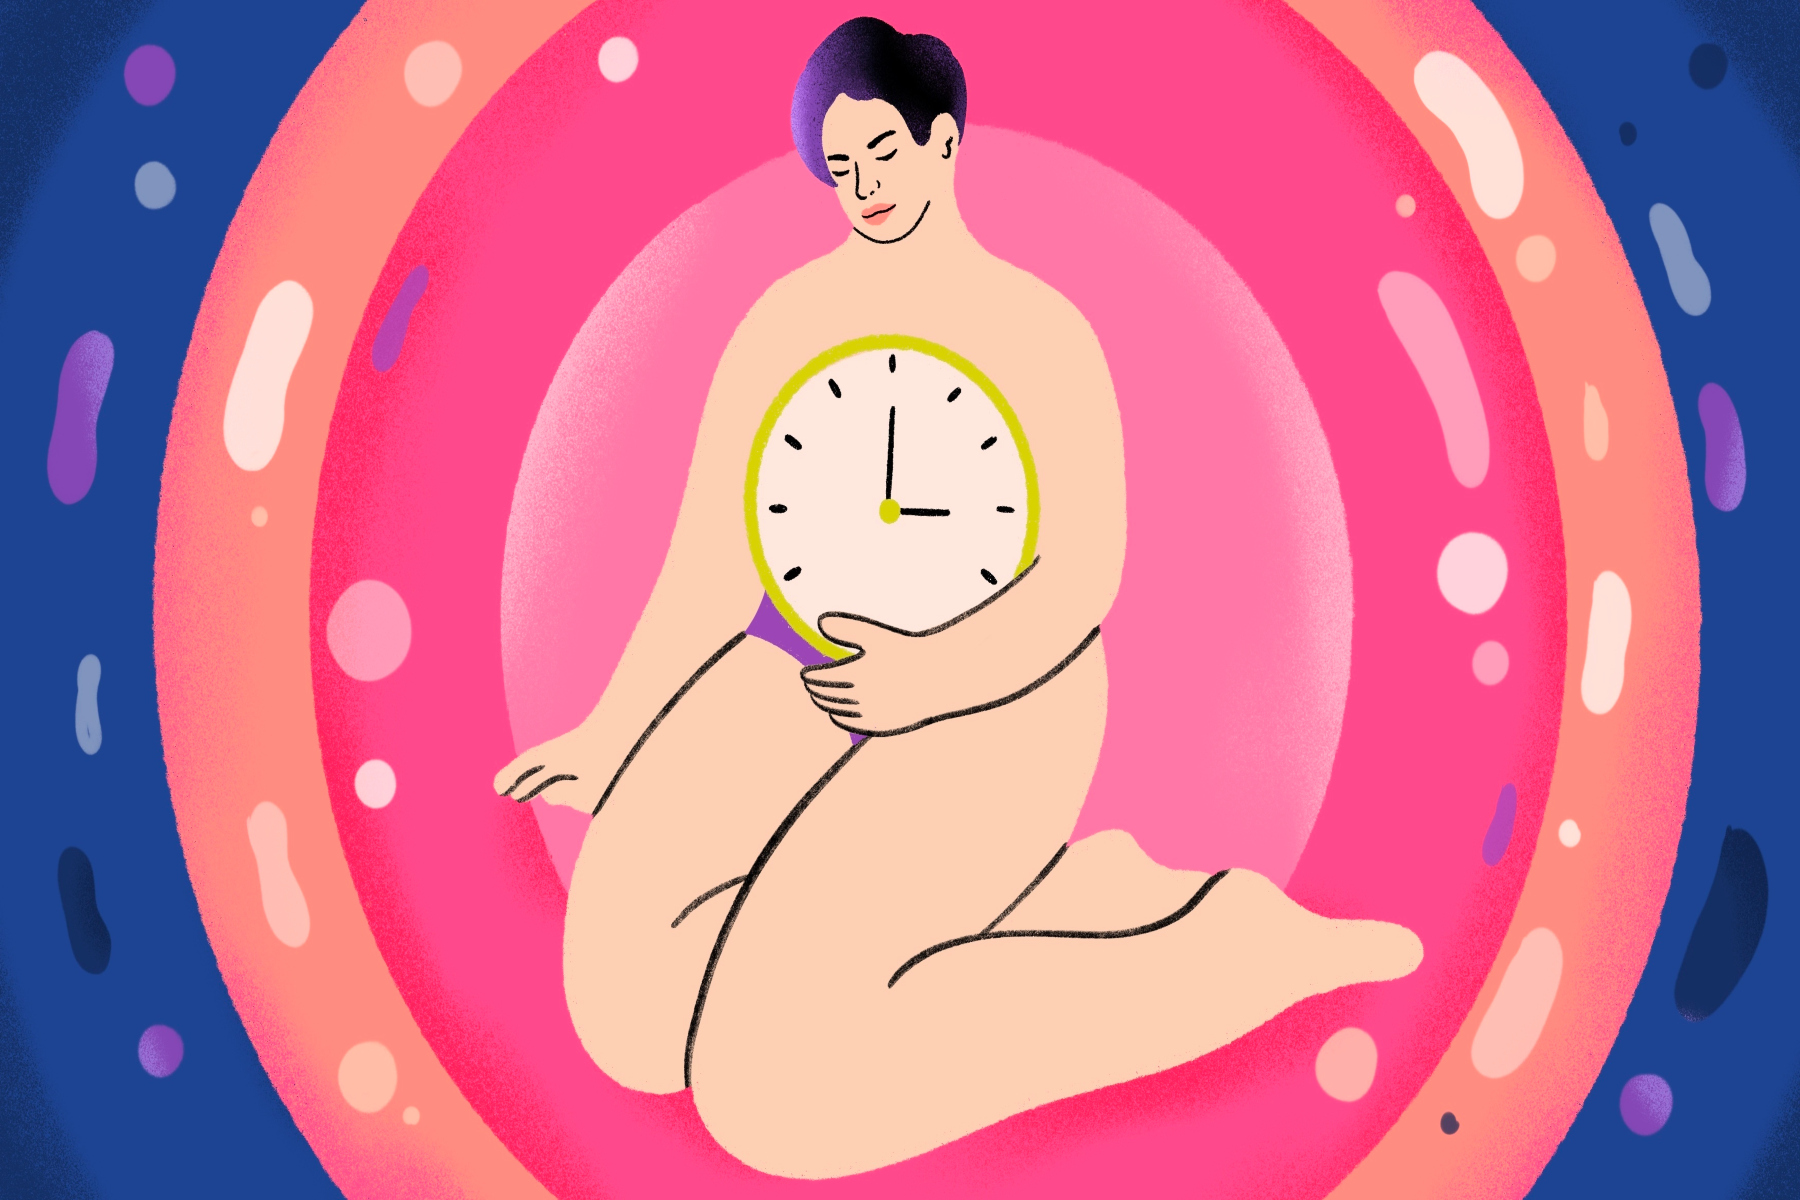 Τεχνολογία: Η κατάψυξη ωαρίων βελτιώνει την ποιότητα ζωής μας